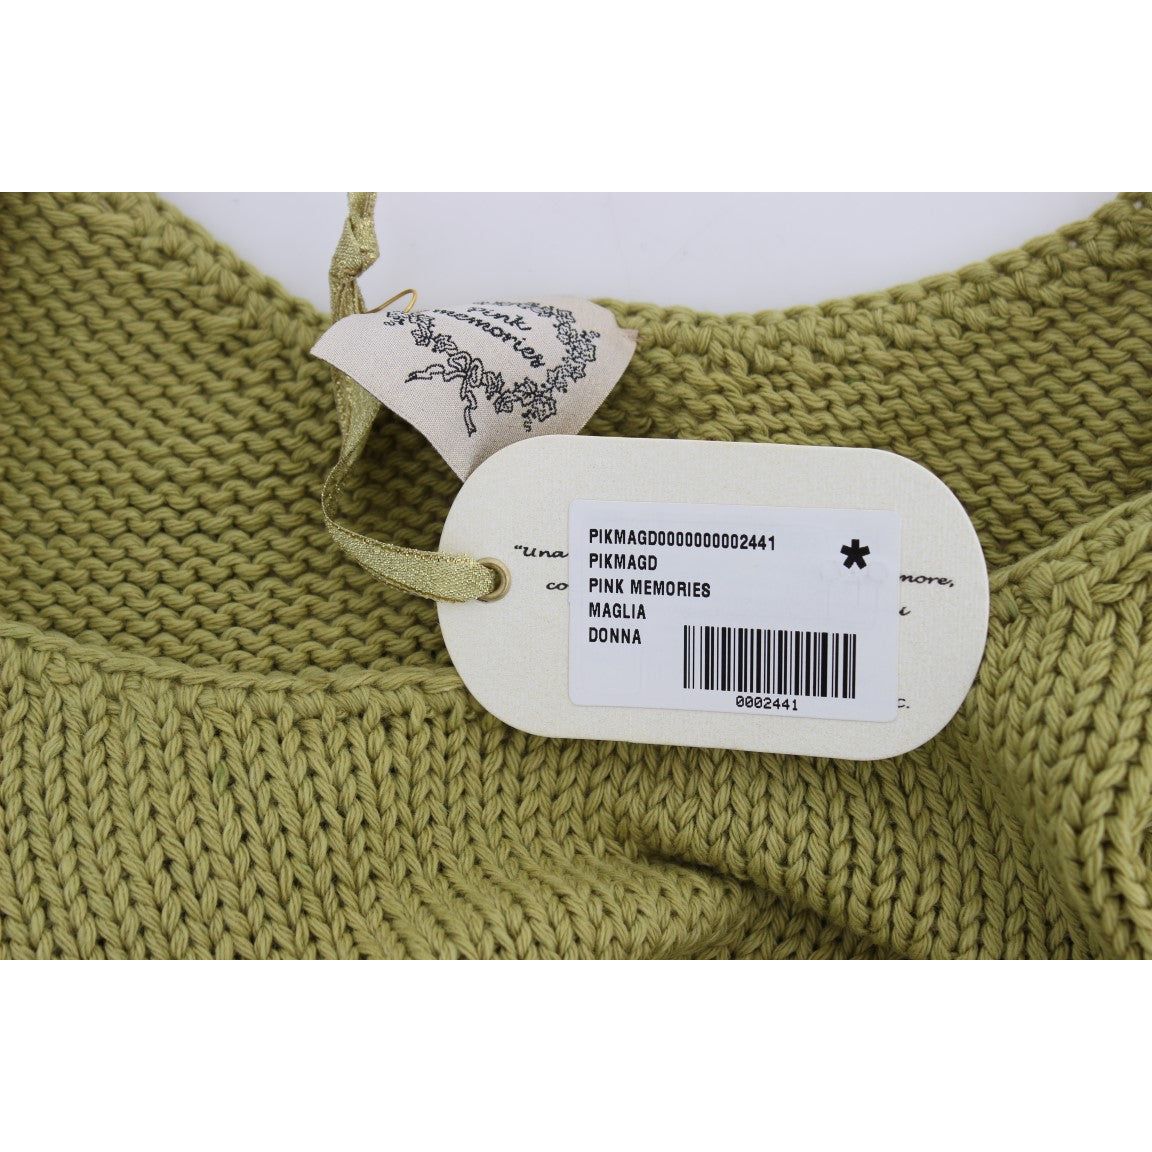 PINK MEMORIES | Green Cotton Blend Knitted Sleeveless Sweater | McRichard Designer Brands